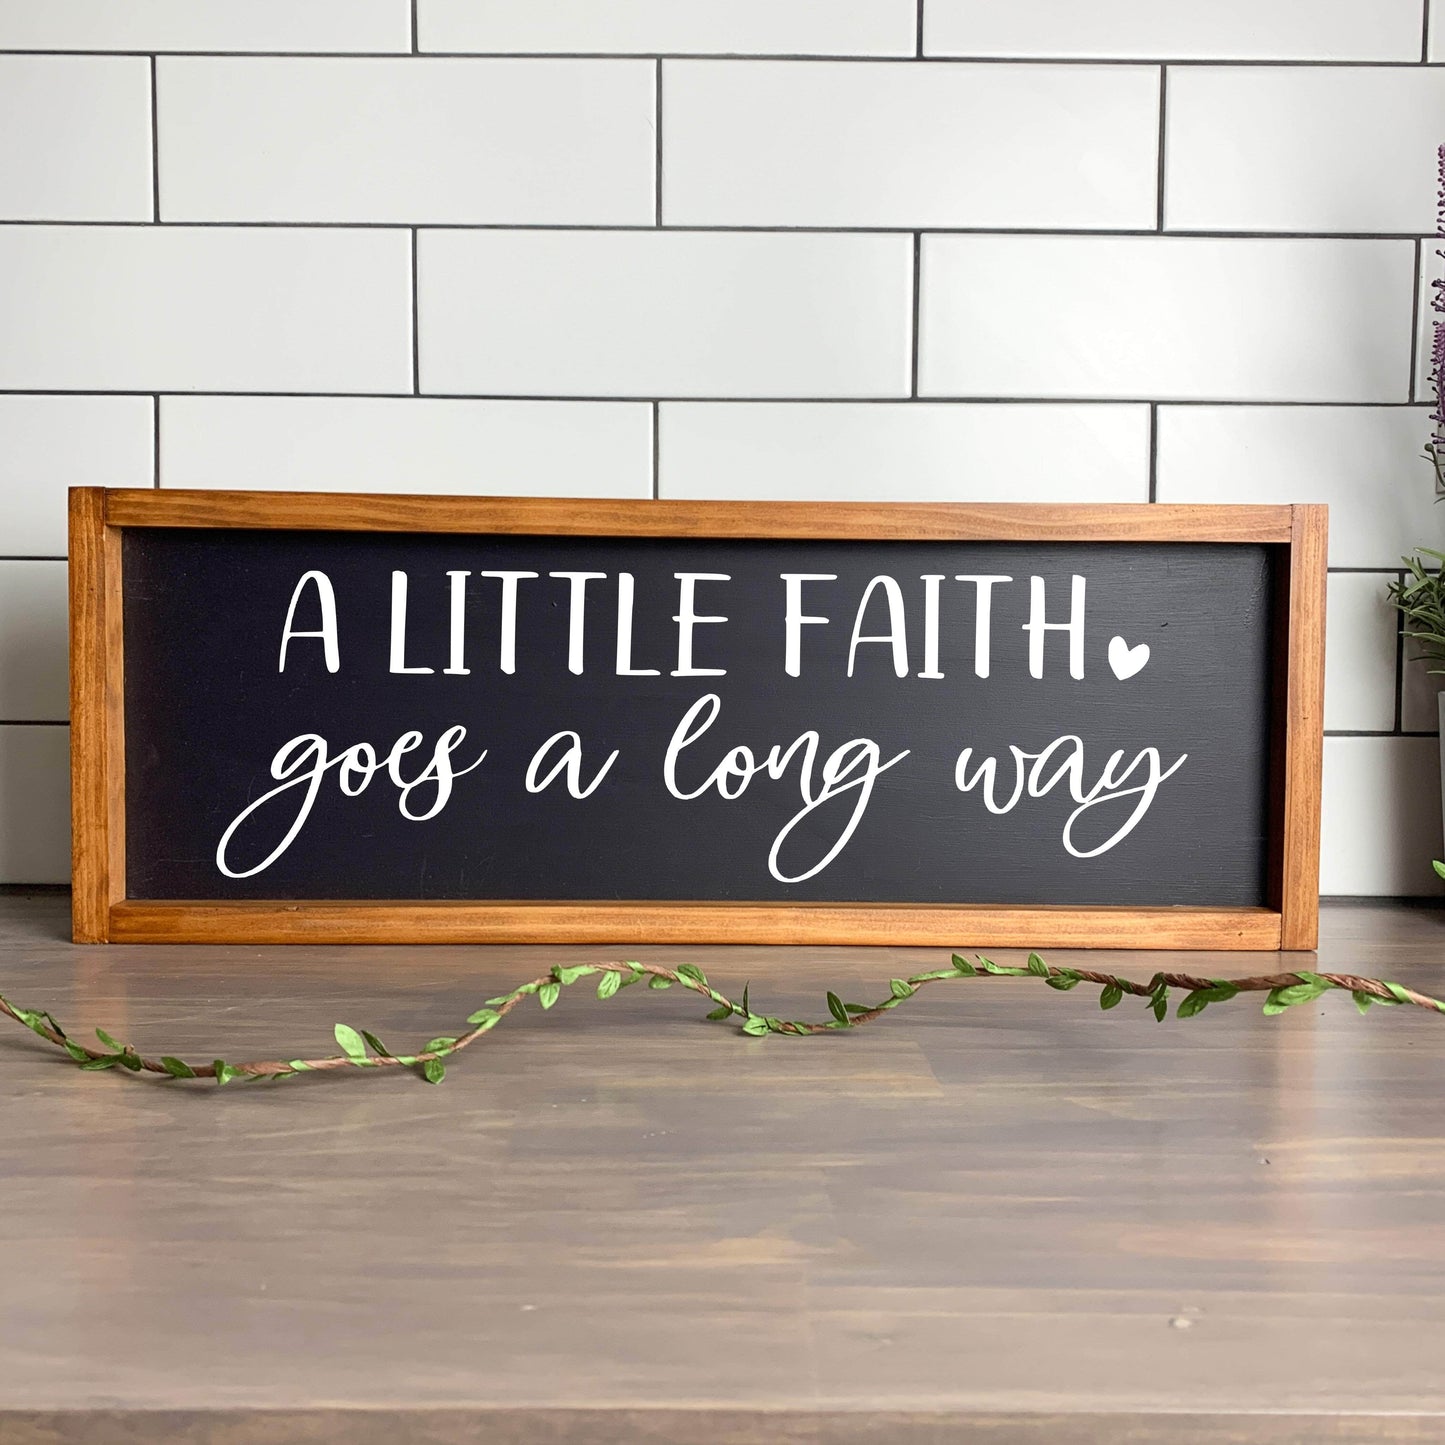 A little faith goes a long way framed wood sign, farmhouse sign, rustic decor, home decor